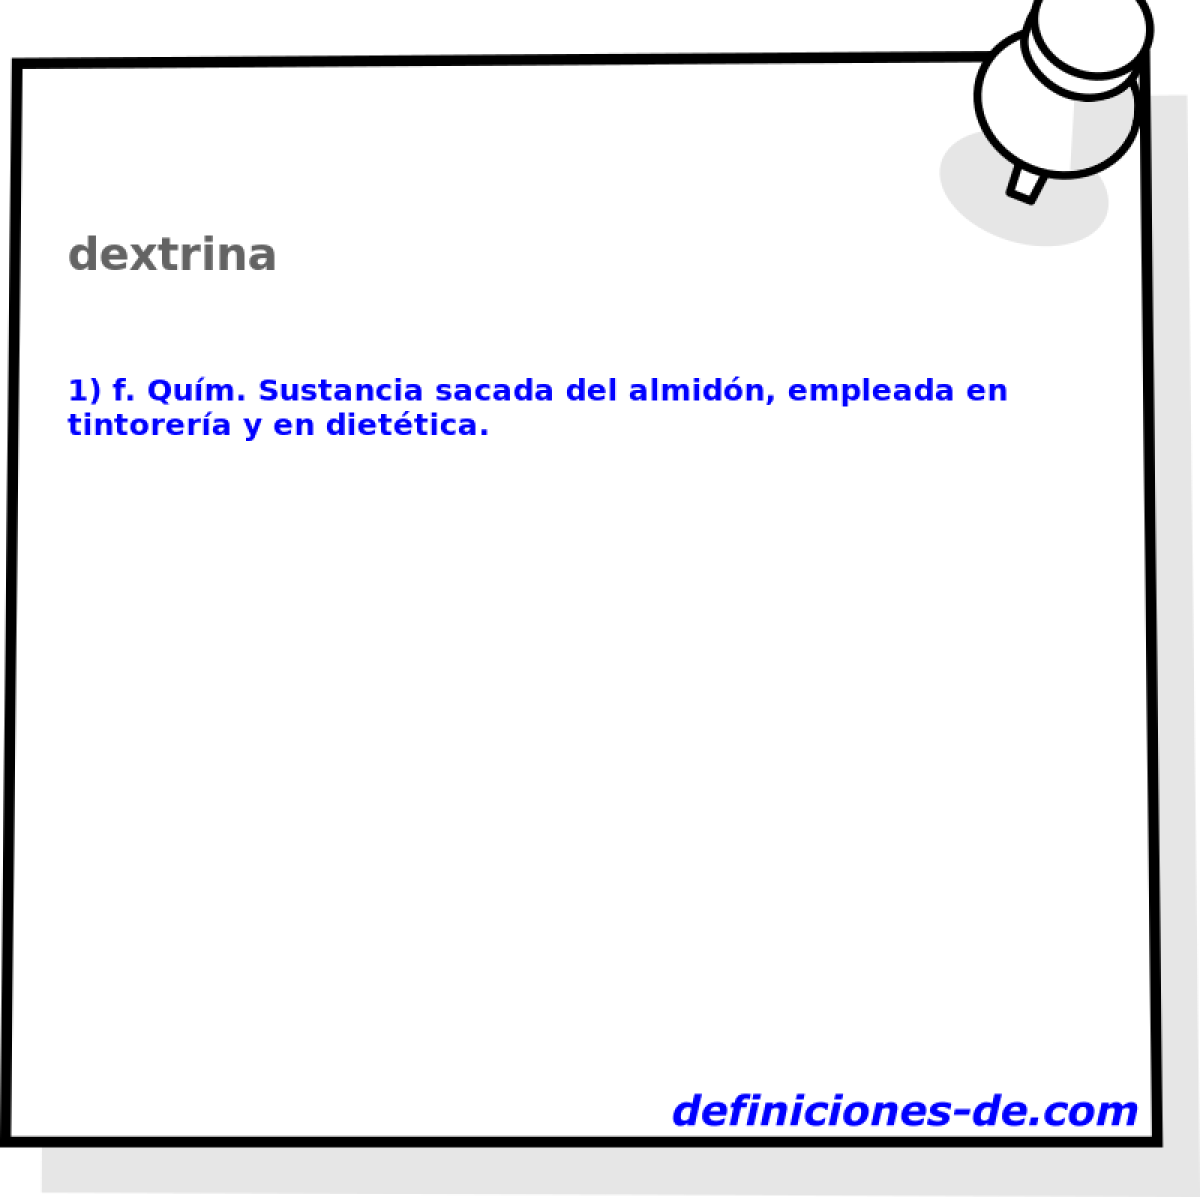 dextrina 